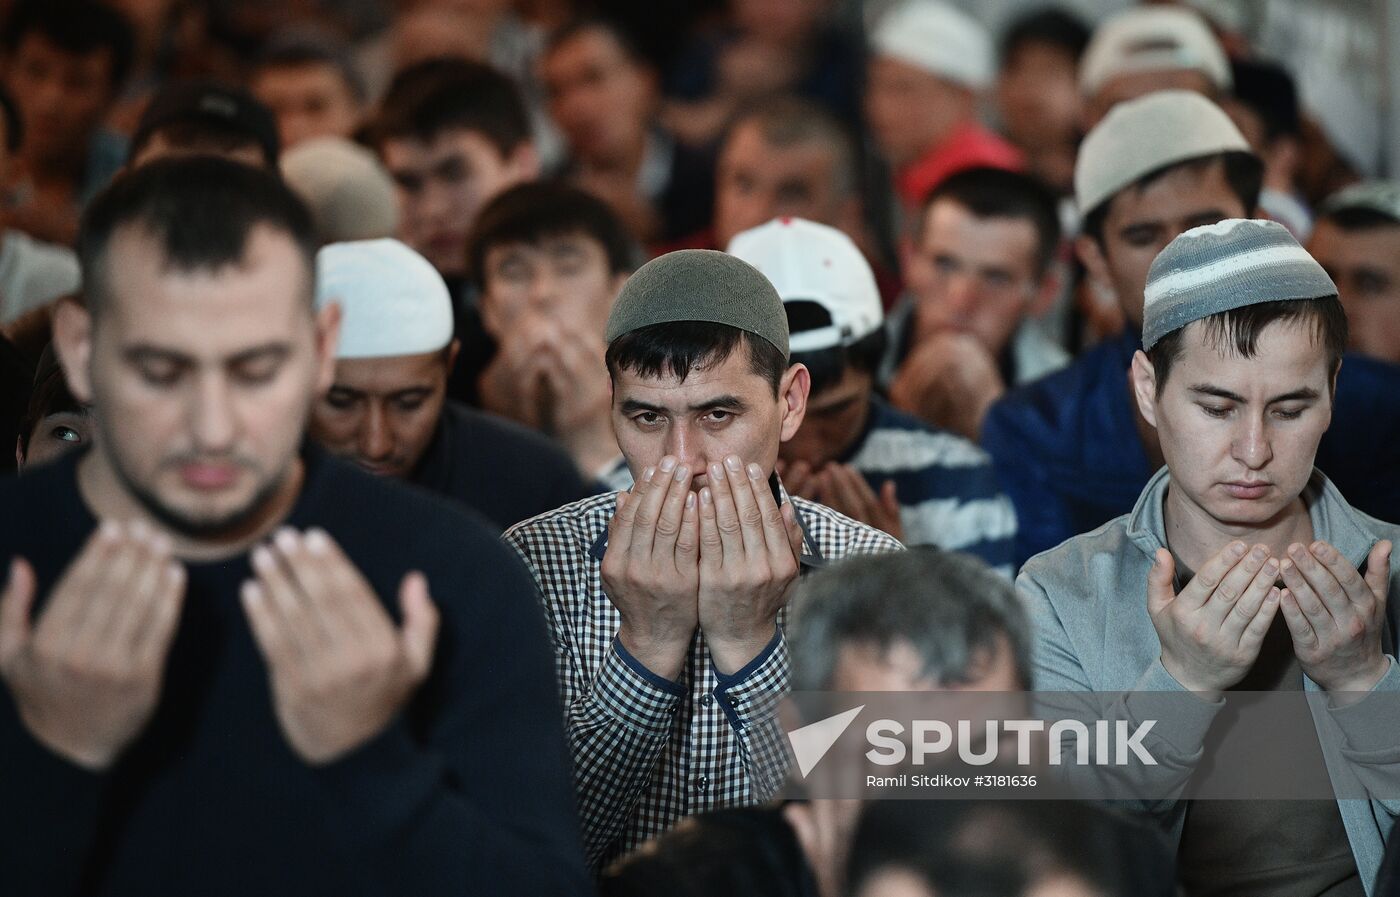 Eid al-Adha celebration in Moscow